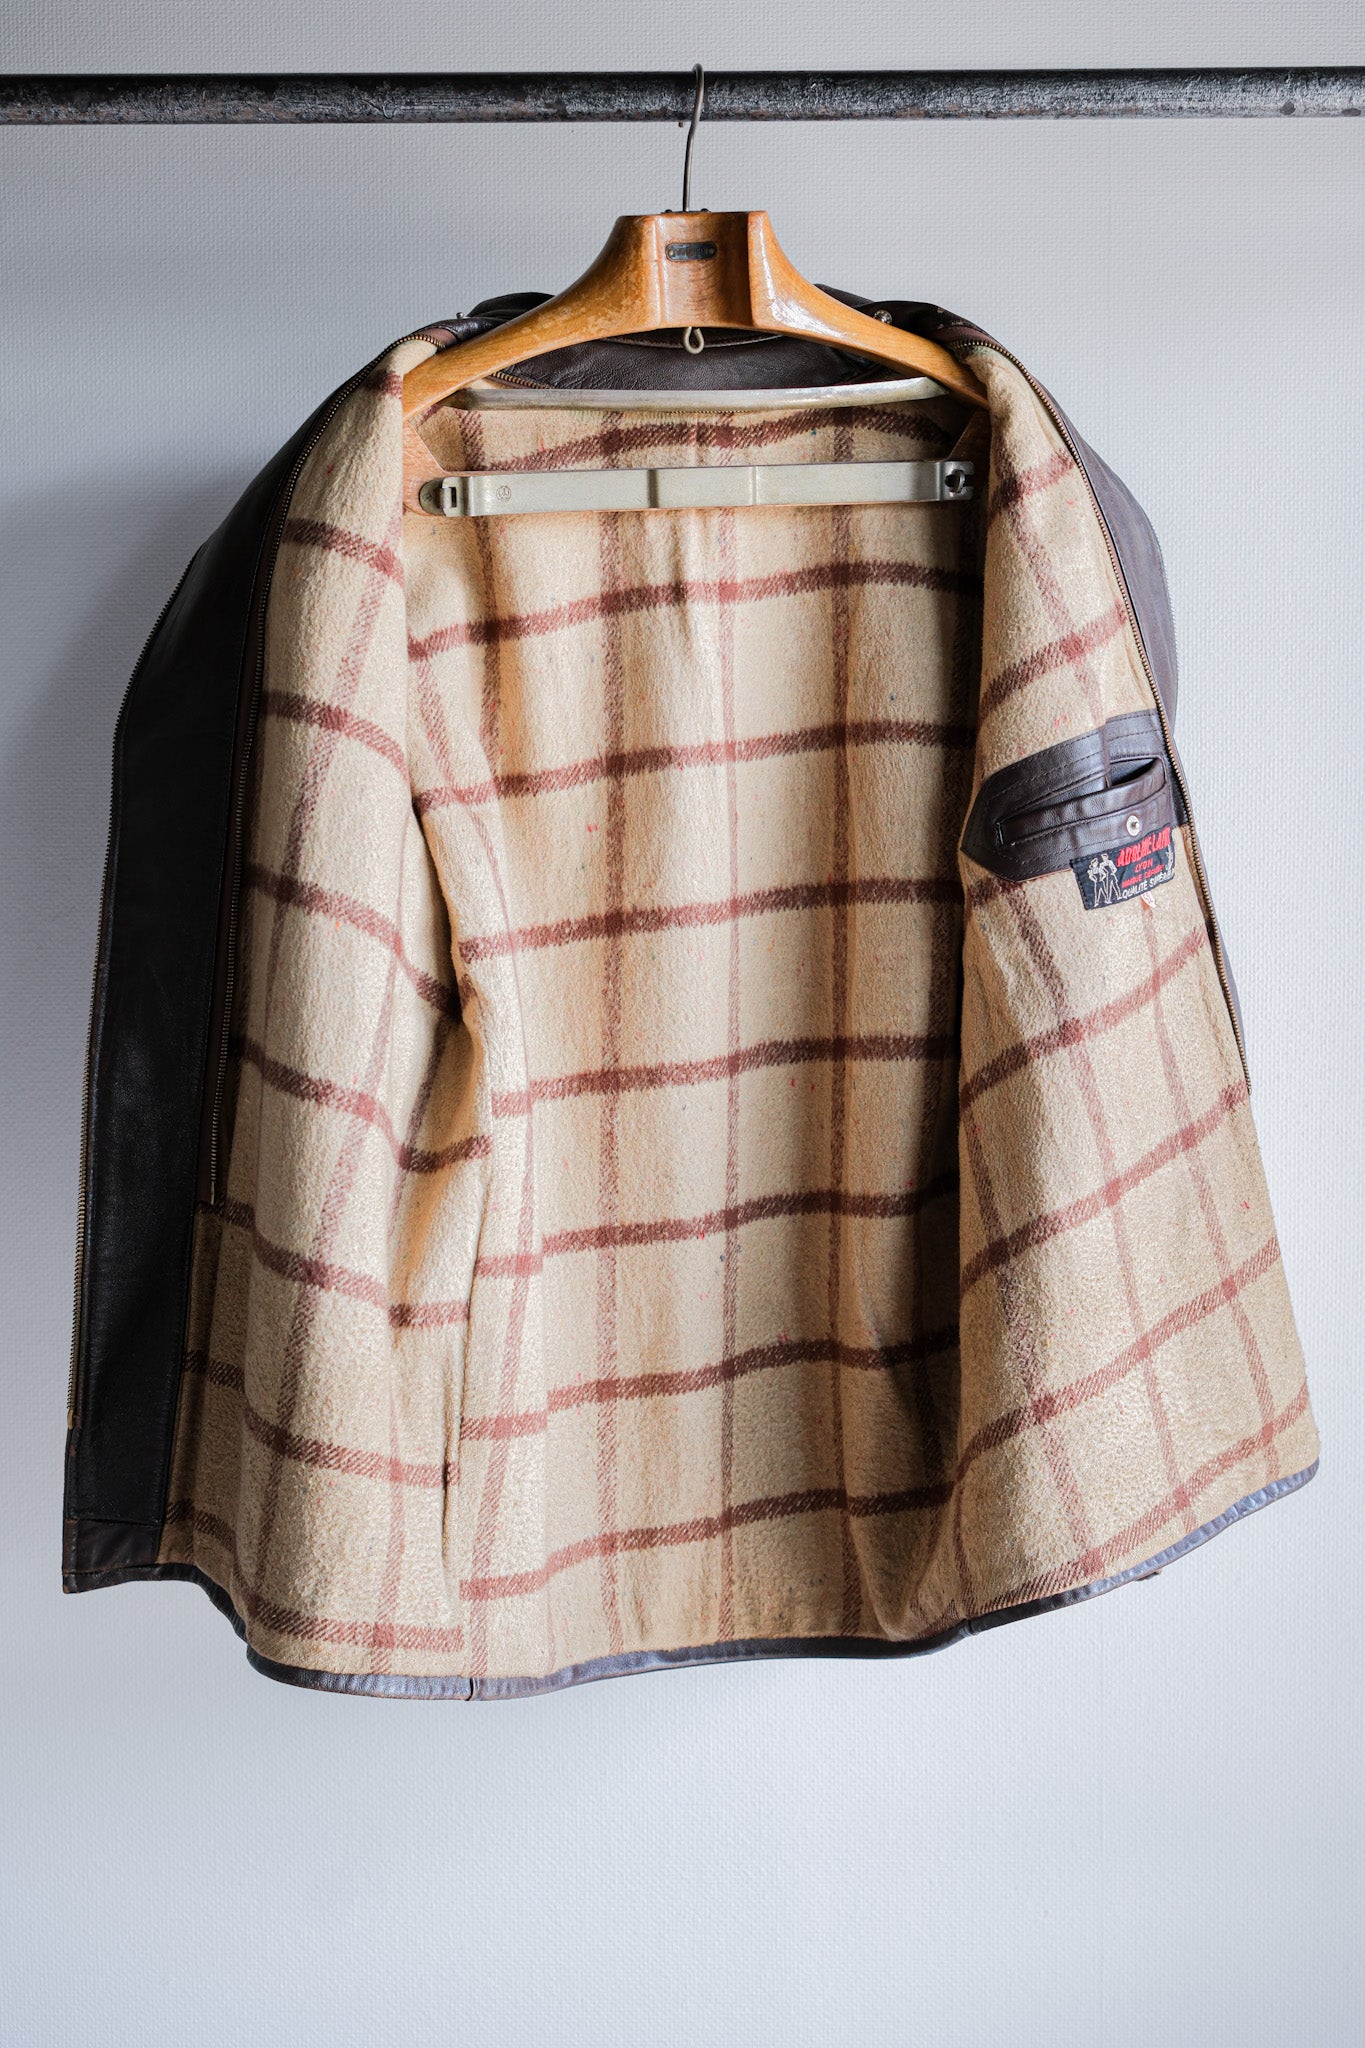 [~ 50's] French vintage zip up Leath work veste de veste.52 "Adolphe Lafont"